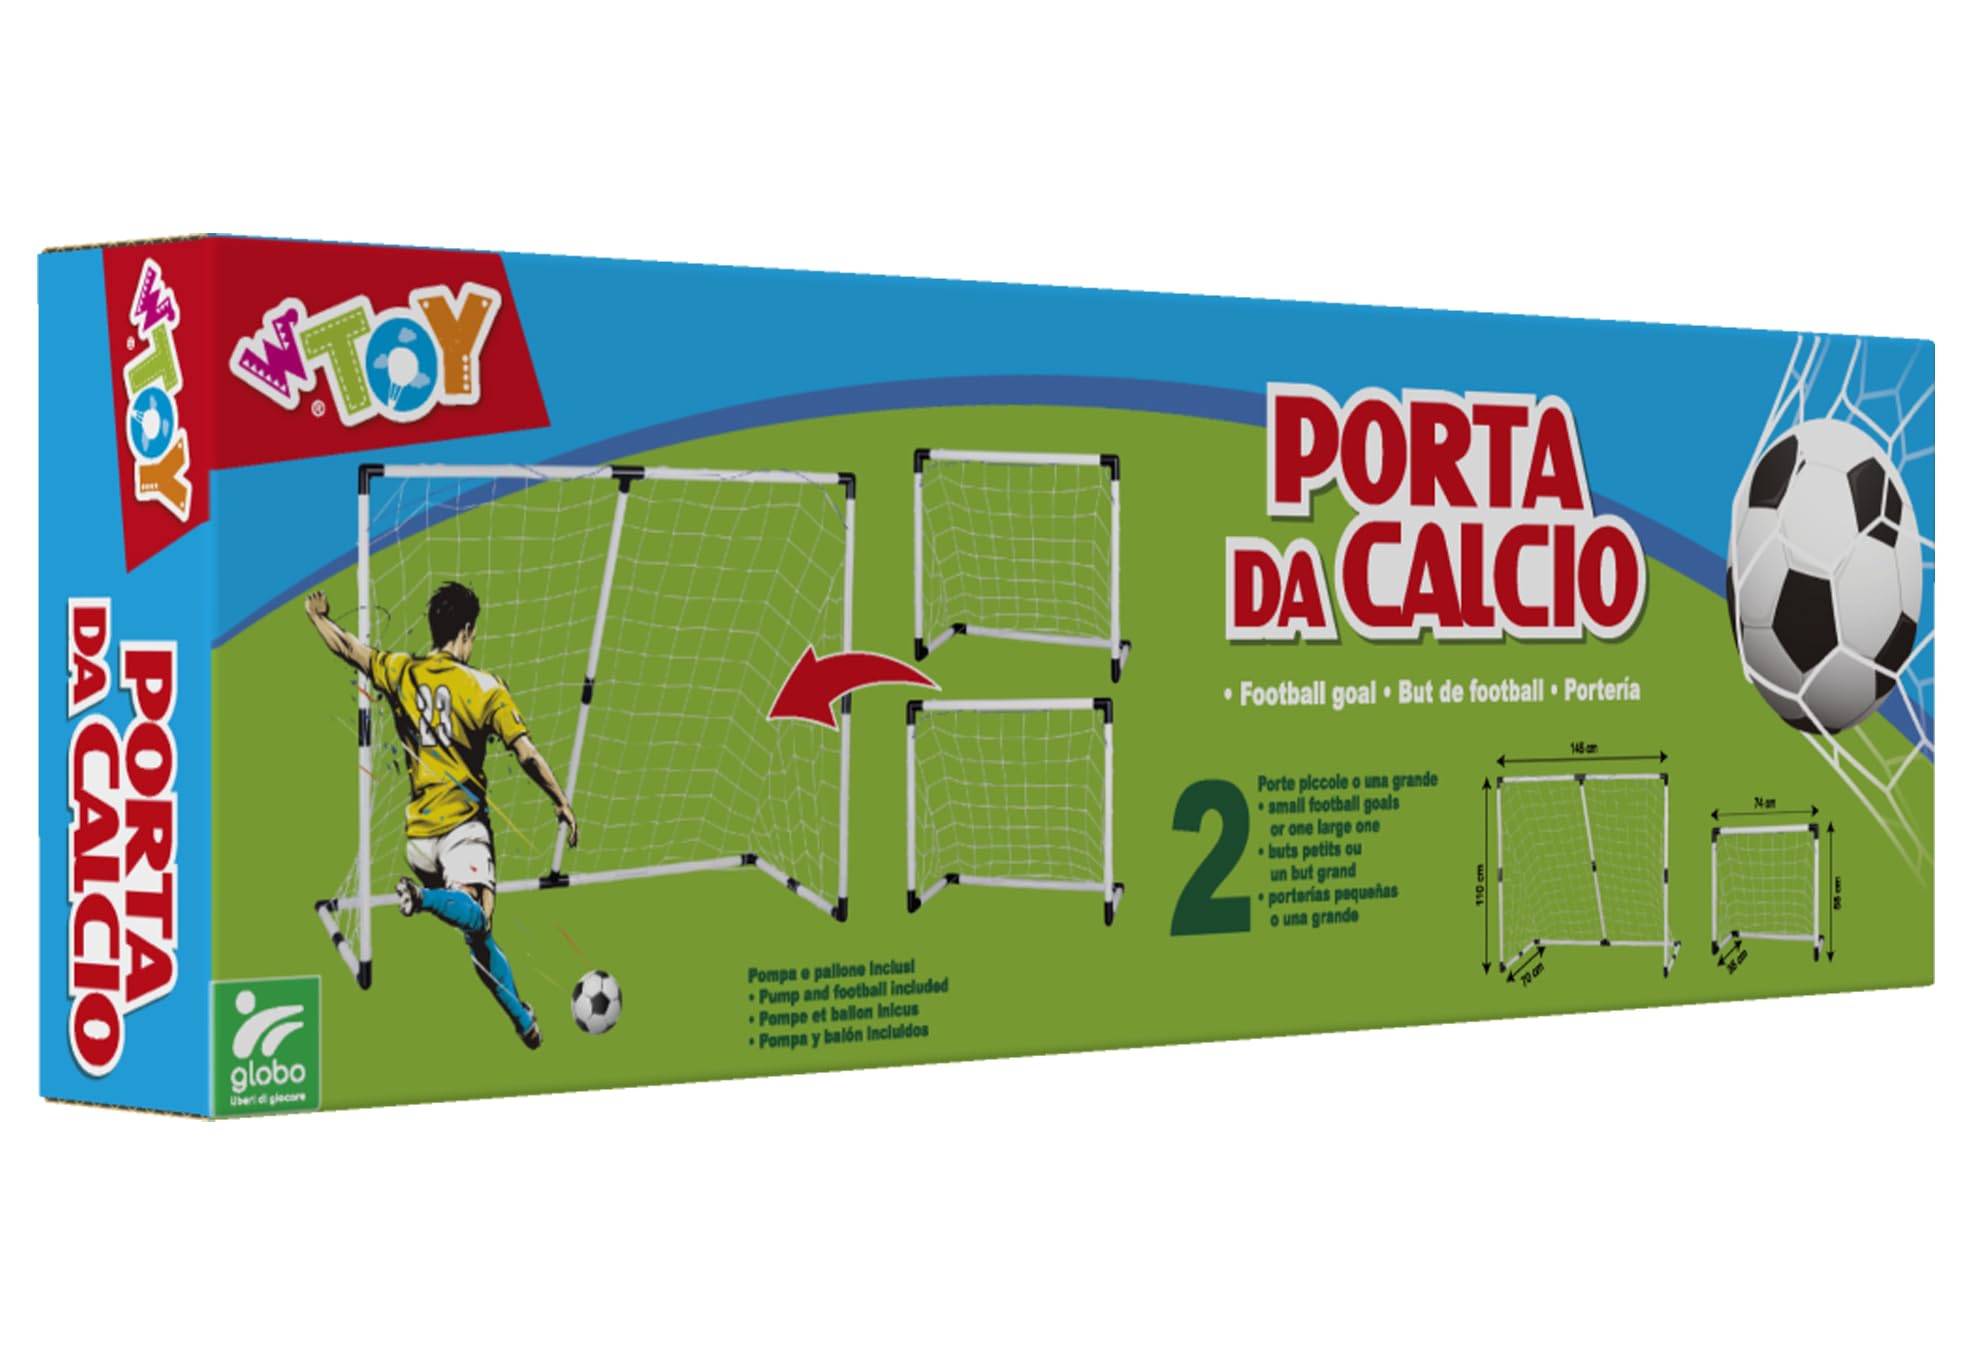 Mini-Fußballtor verstellbar – 2 Größen in 1 – umwandelbar von 74 cm bis 145 cm Breite – Ball und Pumpe enthalten – Globus Toys – WToy 41213